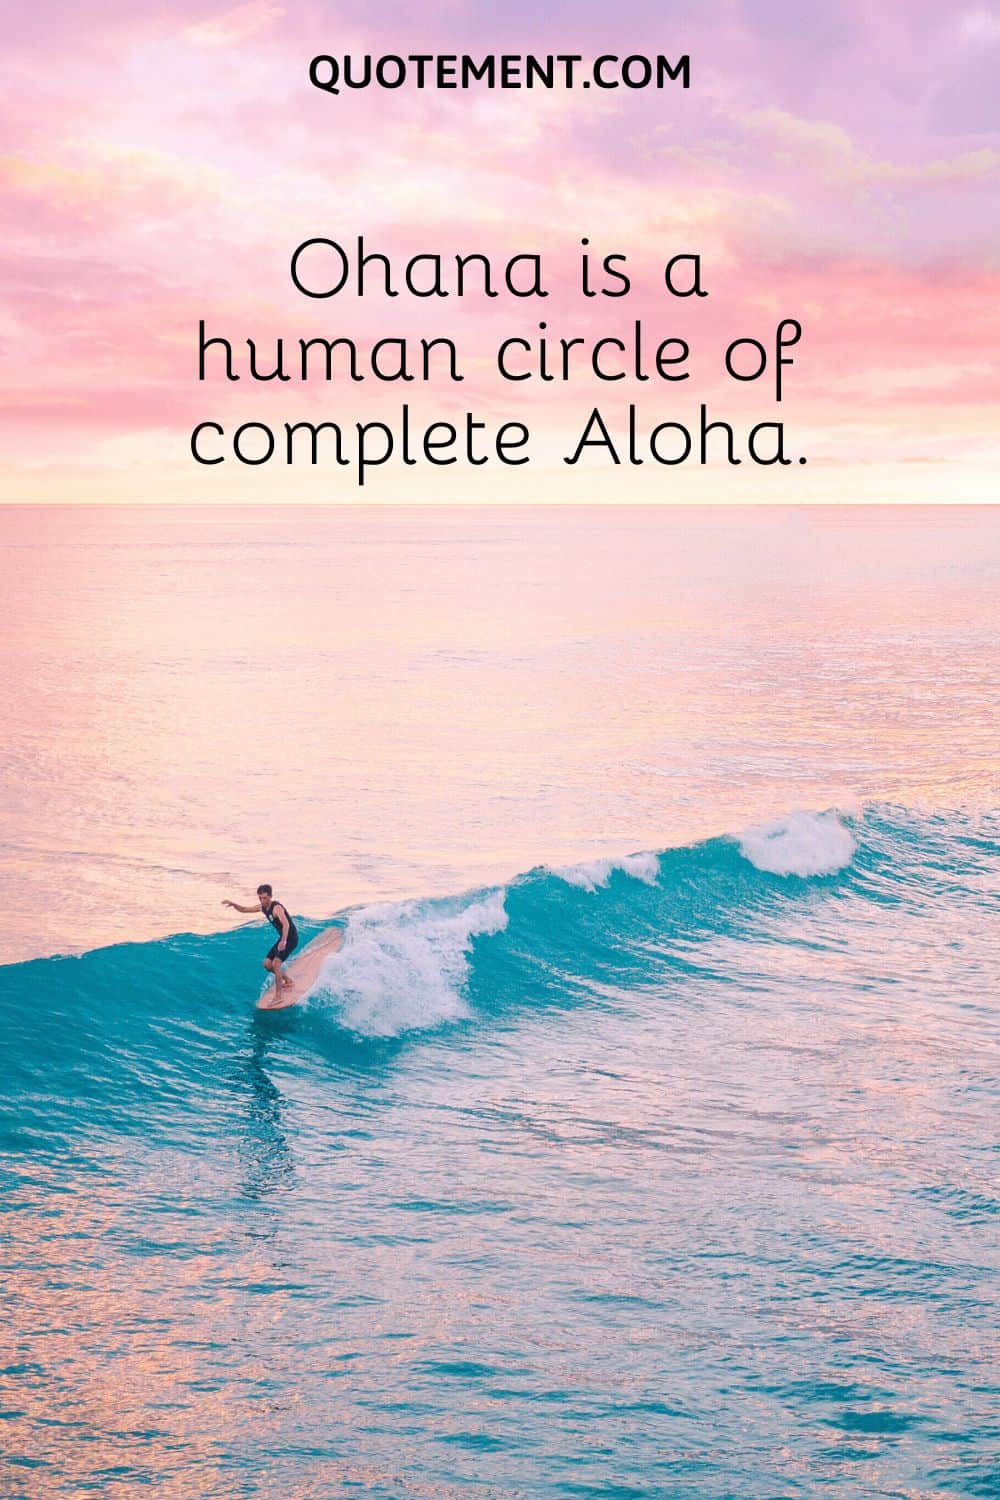 Ohana is a human circle of complete Aloha.